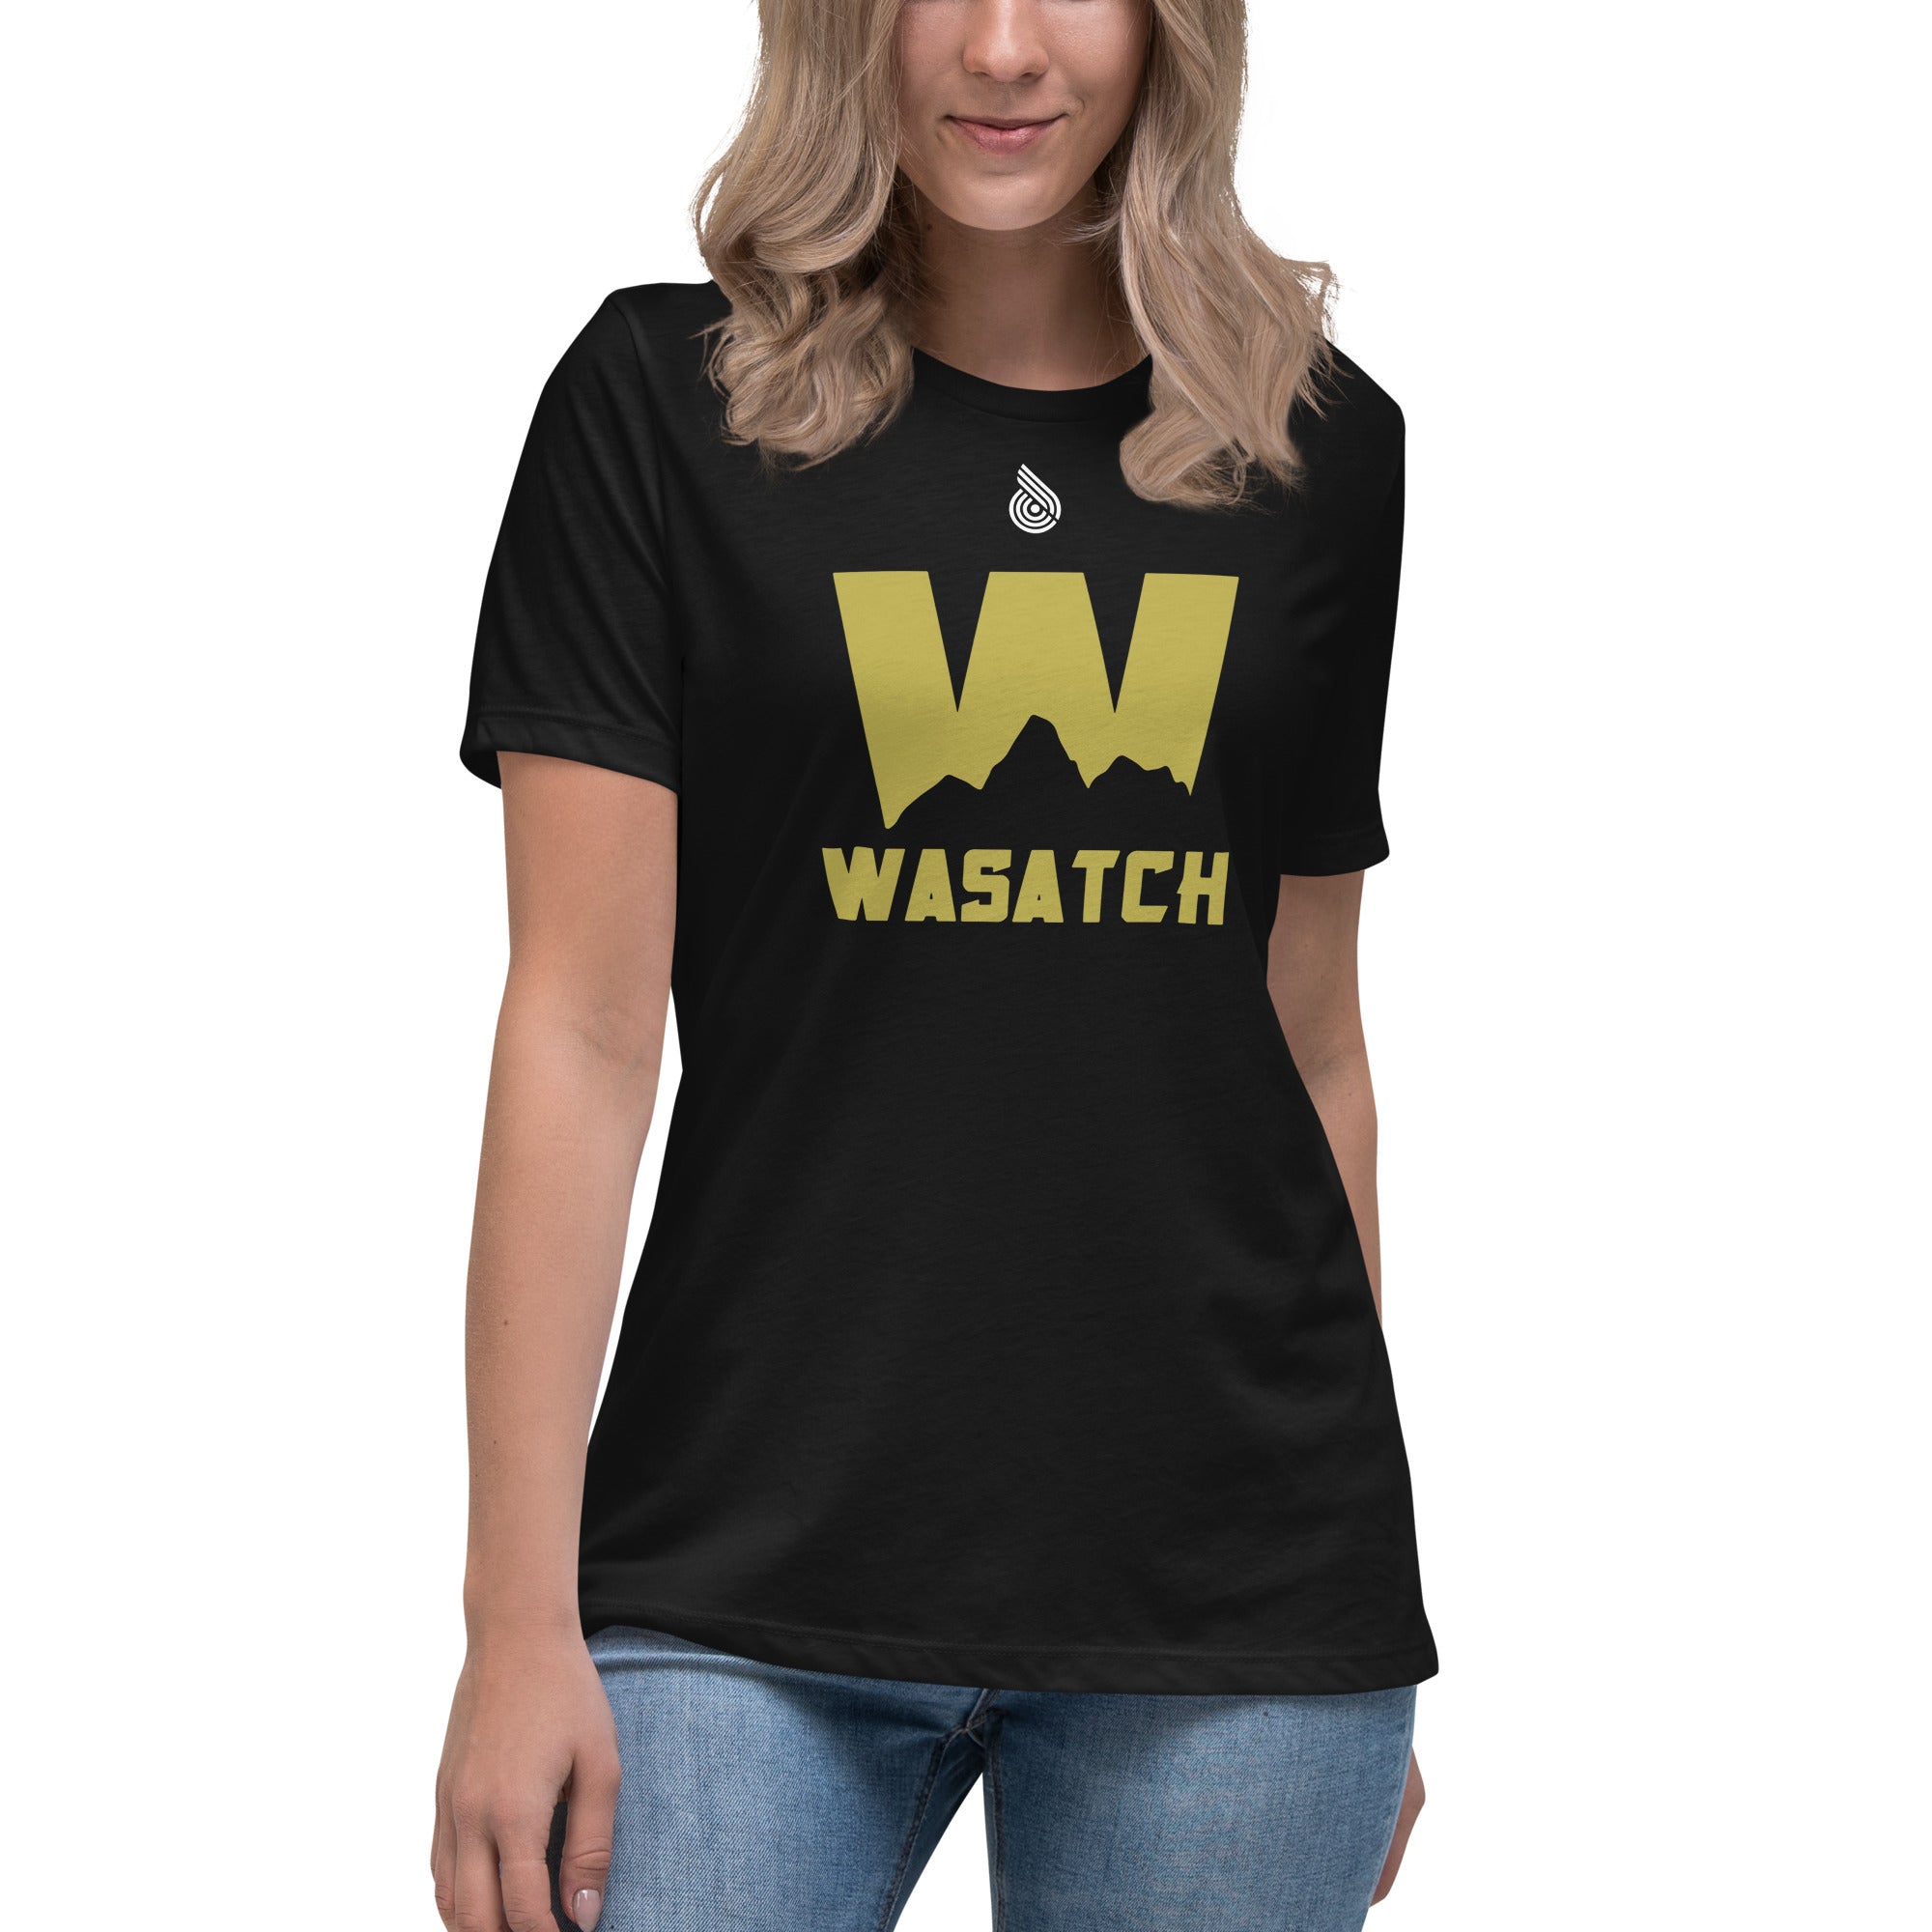 Wasatch Women's Relaxed T-Shirt